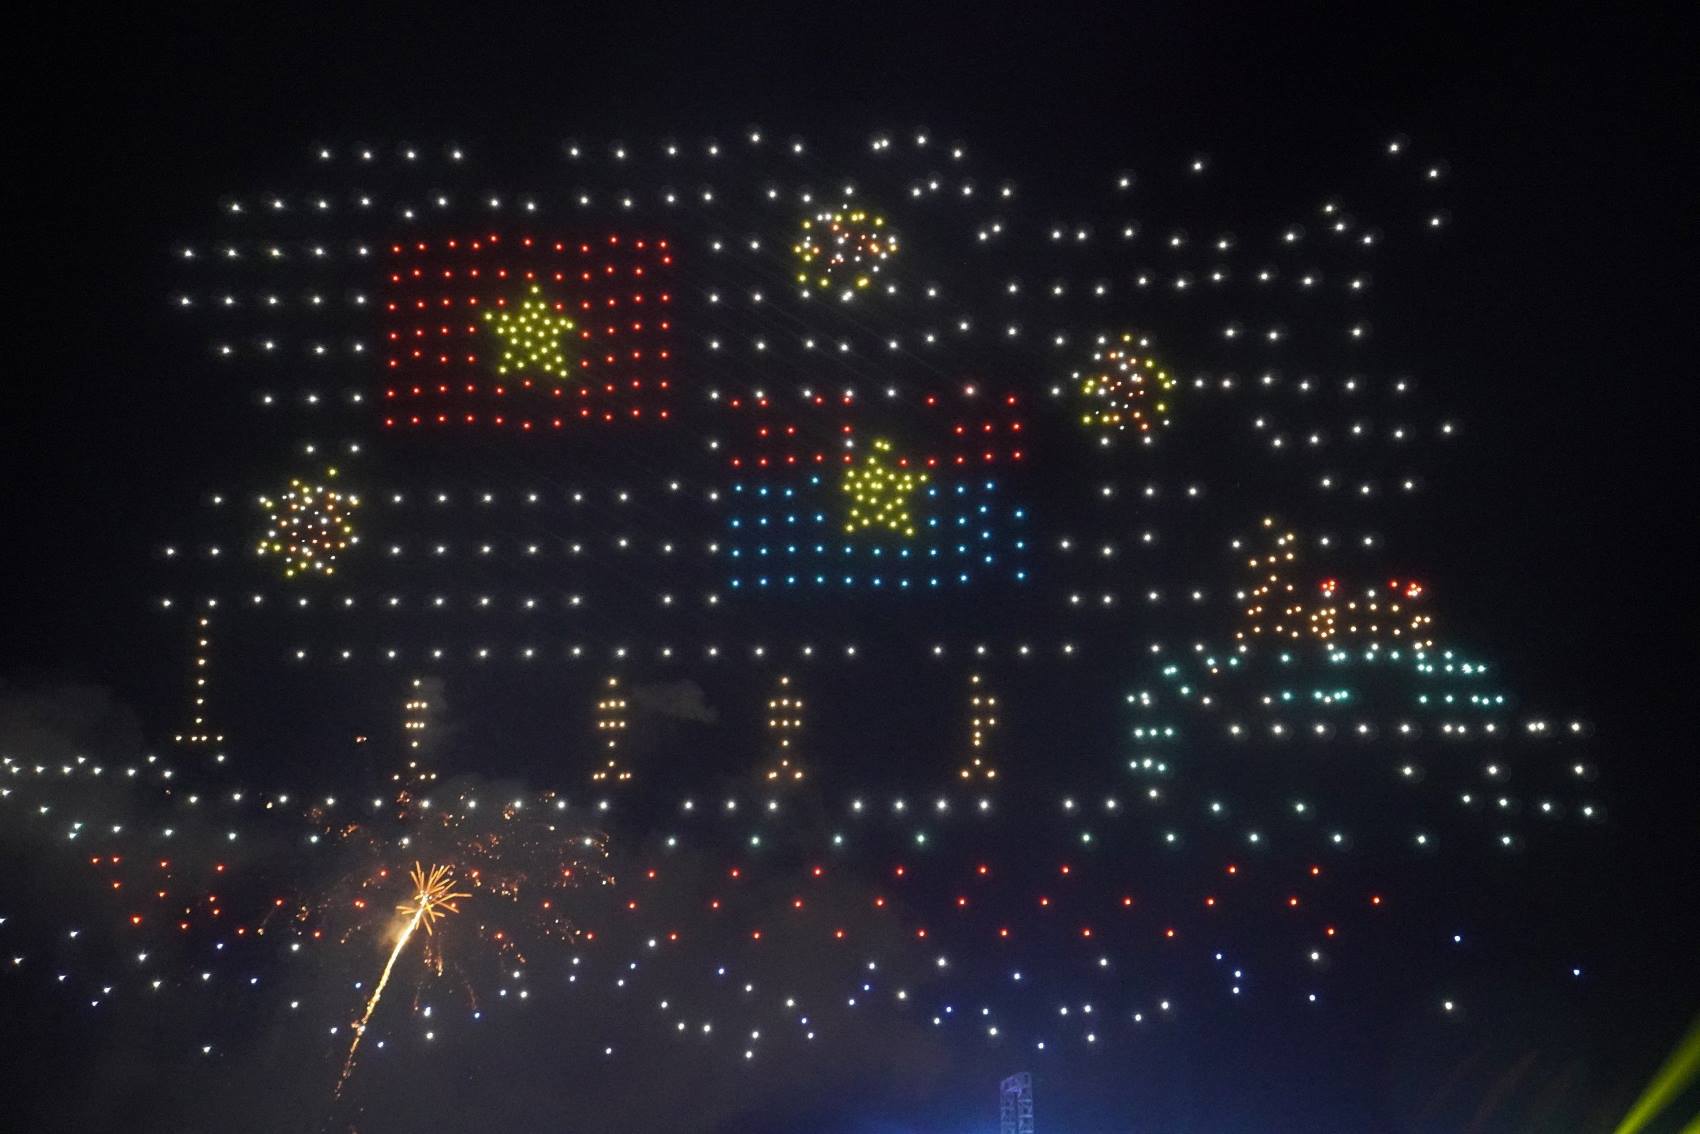 Ngay sau vở đại nhạc kịch là chương trình diễu hành, trình diễn ánh sáng drone light, bắn pháo hoa tại Khu Nhà Rồng Khánh Hội - Cảng Sài Gòn.